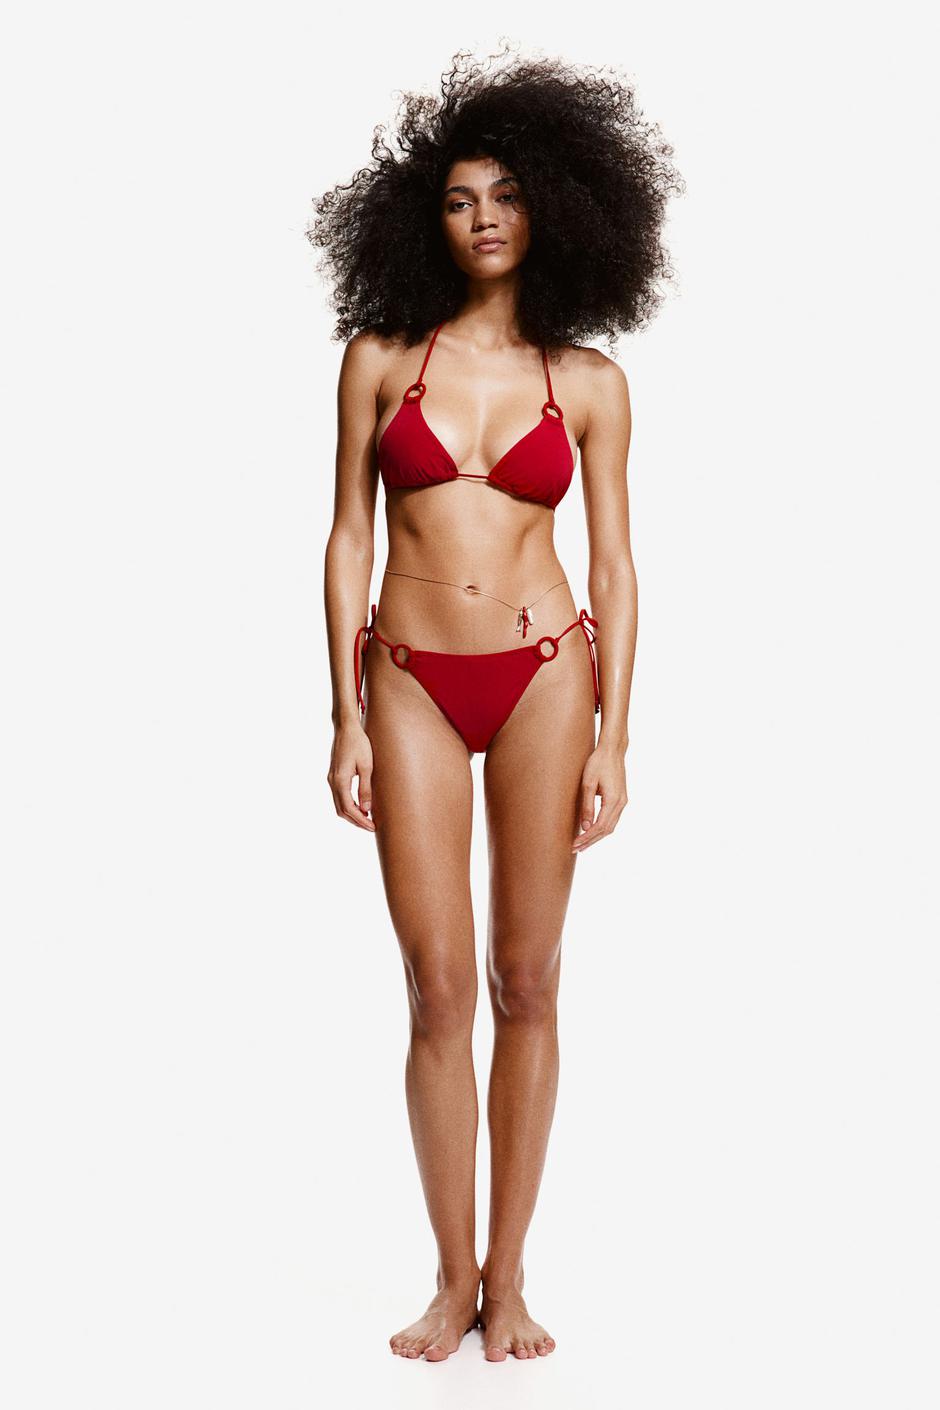 Foto: H&M, dvodijelni crveni kupaći kostim (15,99 eura) | Autor: 